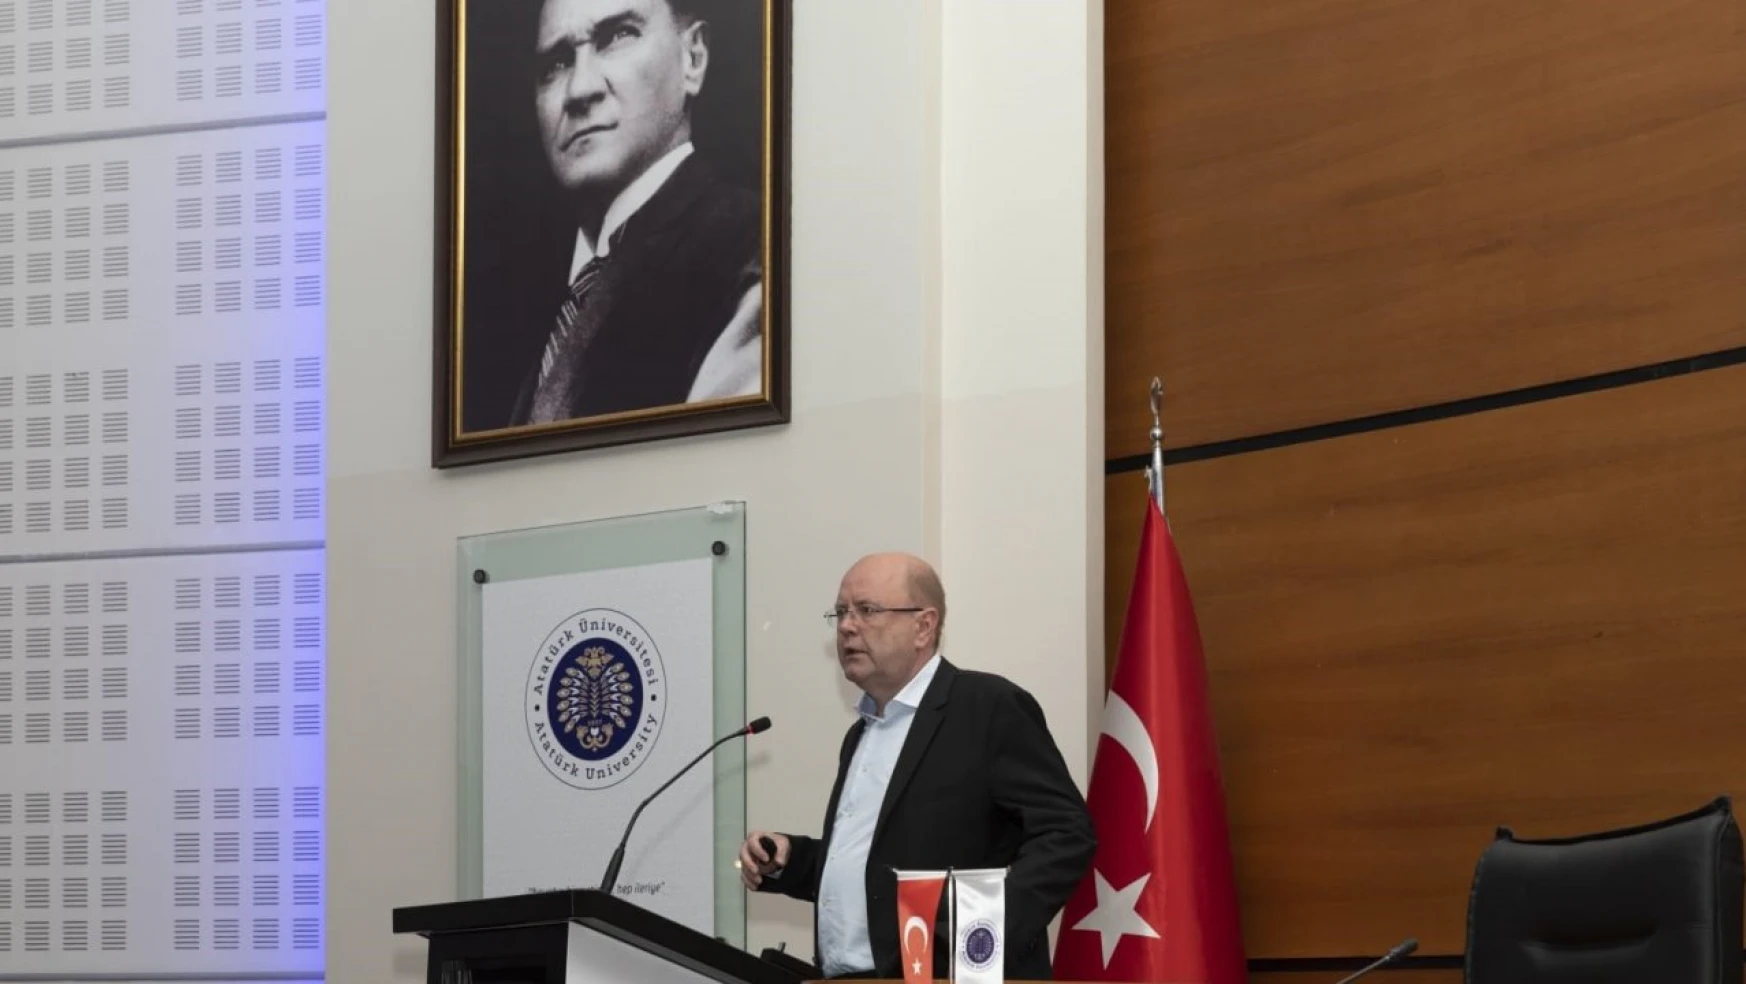 Prof. Dr. Ingo eilks, Atatürk Üniversitesinde sunum yaptı